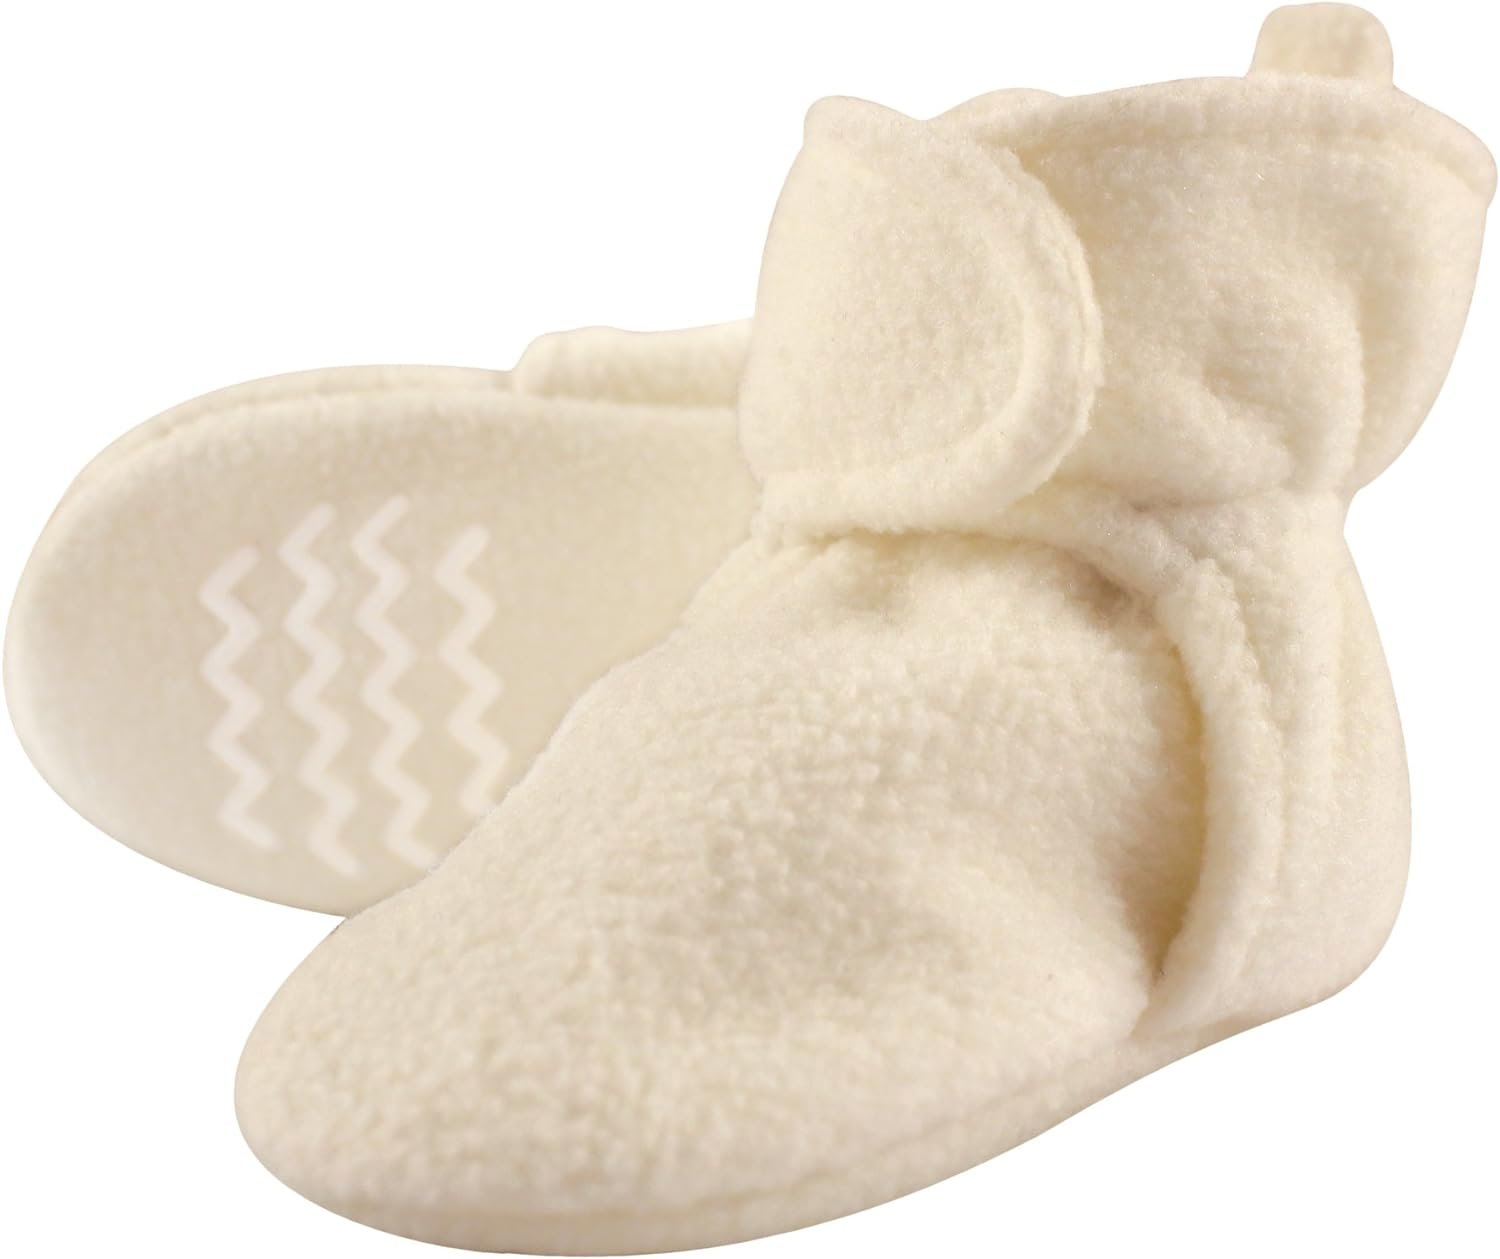 Hudson Baby Unisex-Baby Cozy Fleece Booties Slipper Sock, Cream, 0-6 Months